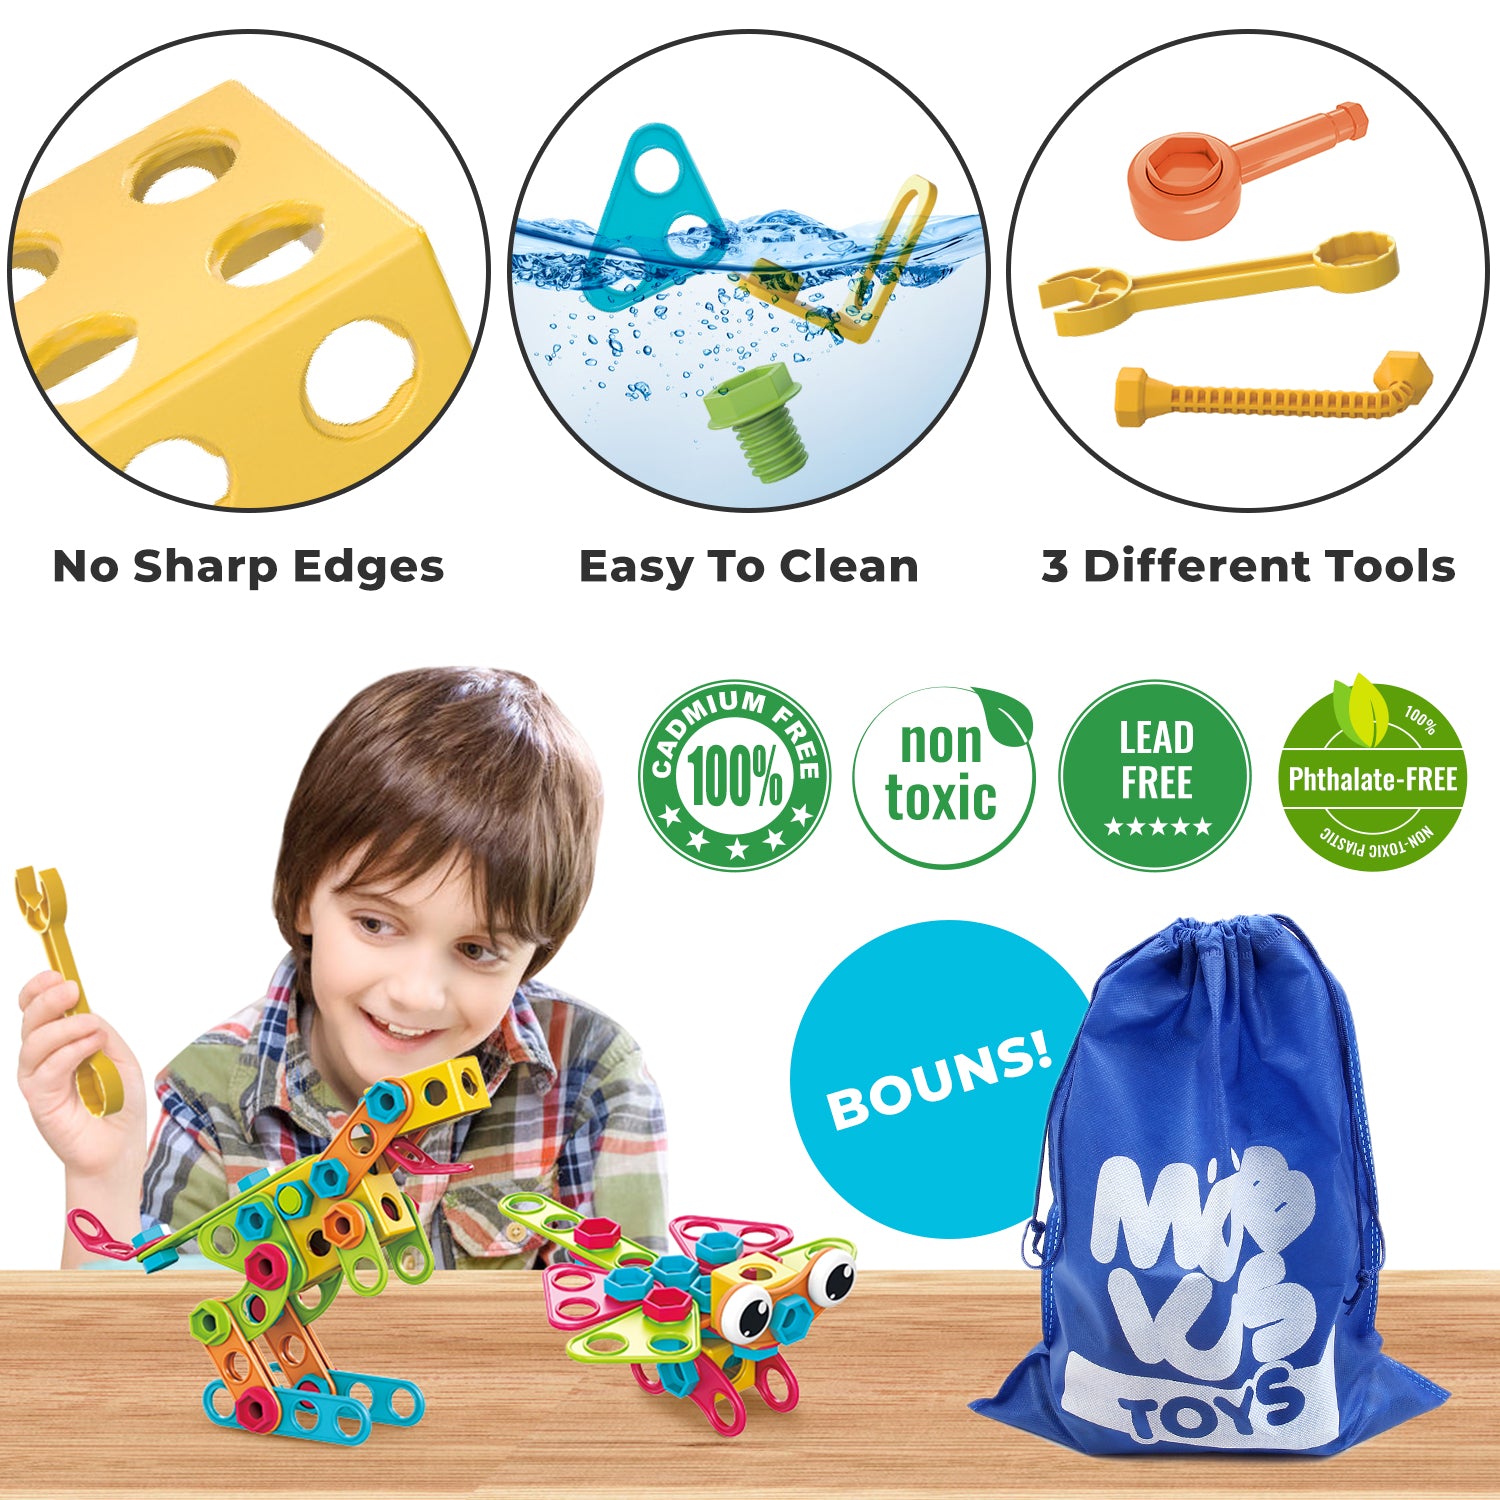 175 pièces Stem Toys Kit Jouet de construction pour enfants